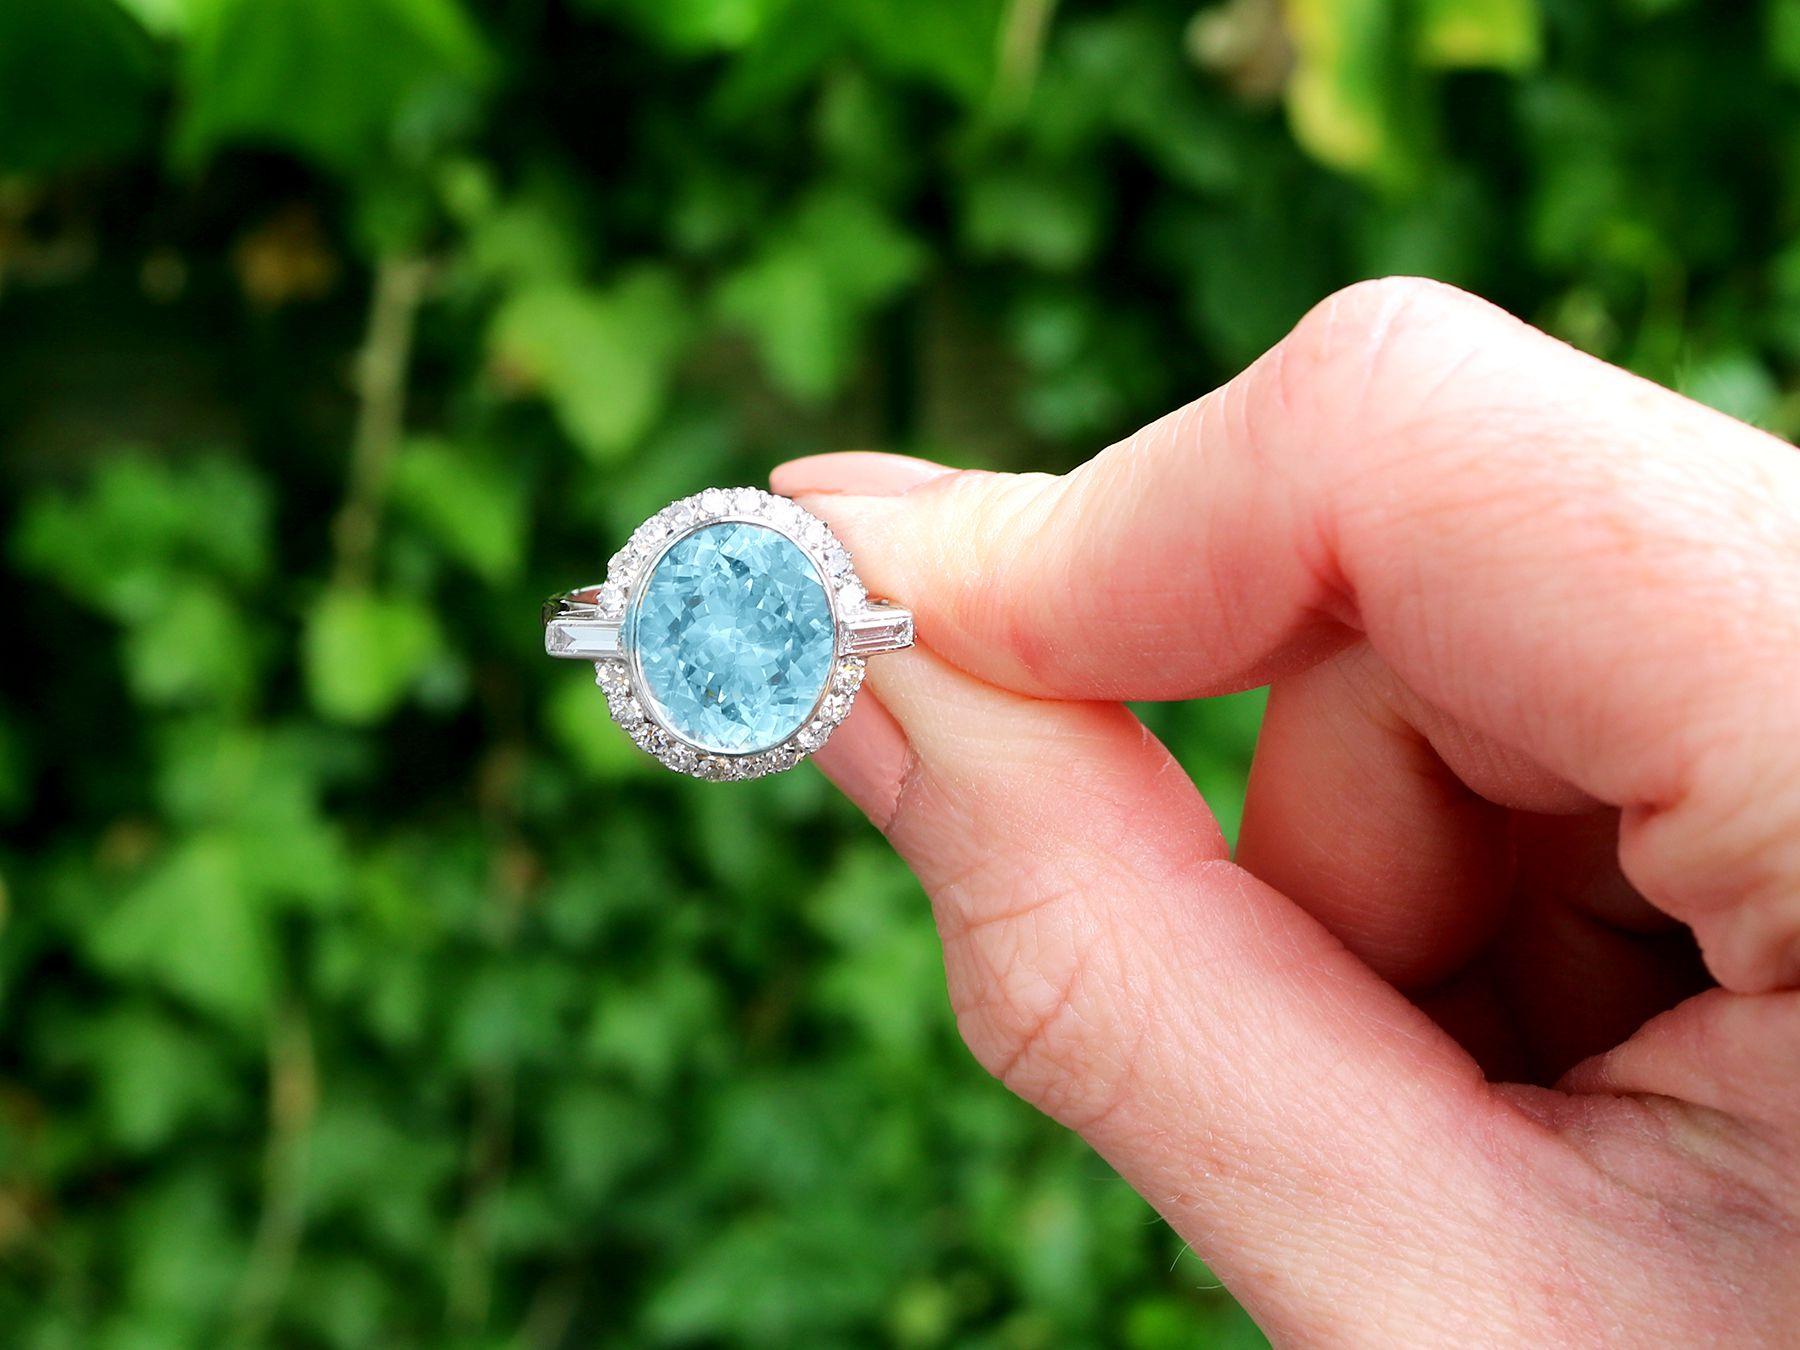 Ein atemberaubender, feiner und beeindruckender Ring aus Platin mit einem Aquamarin von 4,24 Karat und einem Diamanten von 0,68 Karat; Teil unserer vielfältigen Edelsteinschmuck- und Nachlassschmuck-Kollektionen.

Dieser atemberaubende, feine und